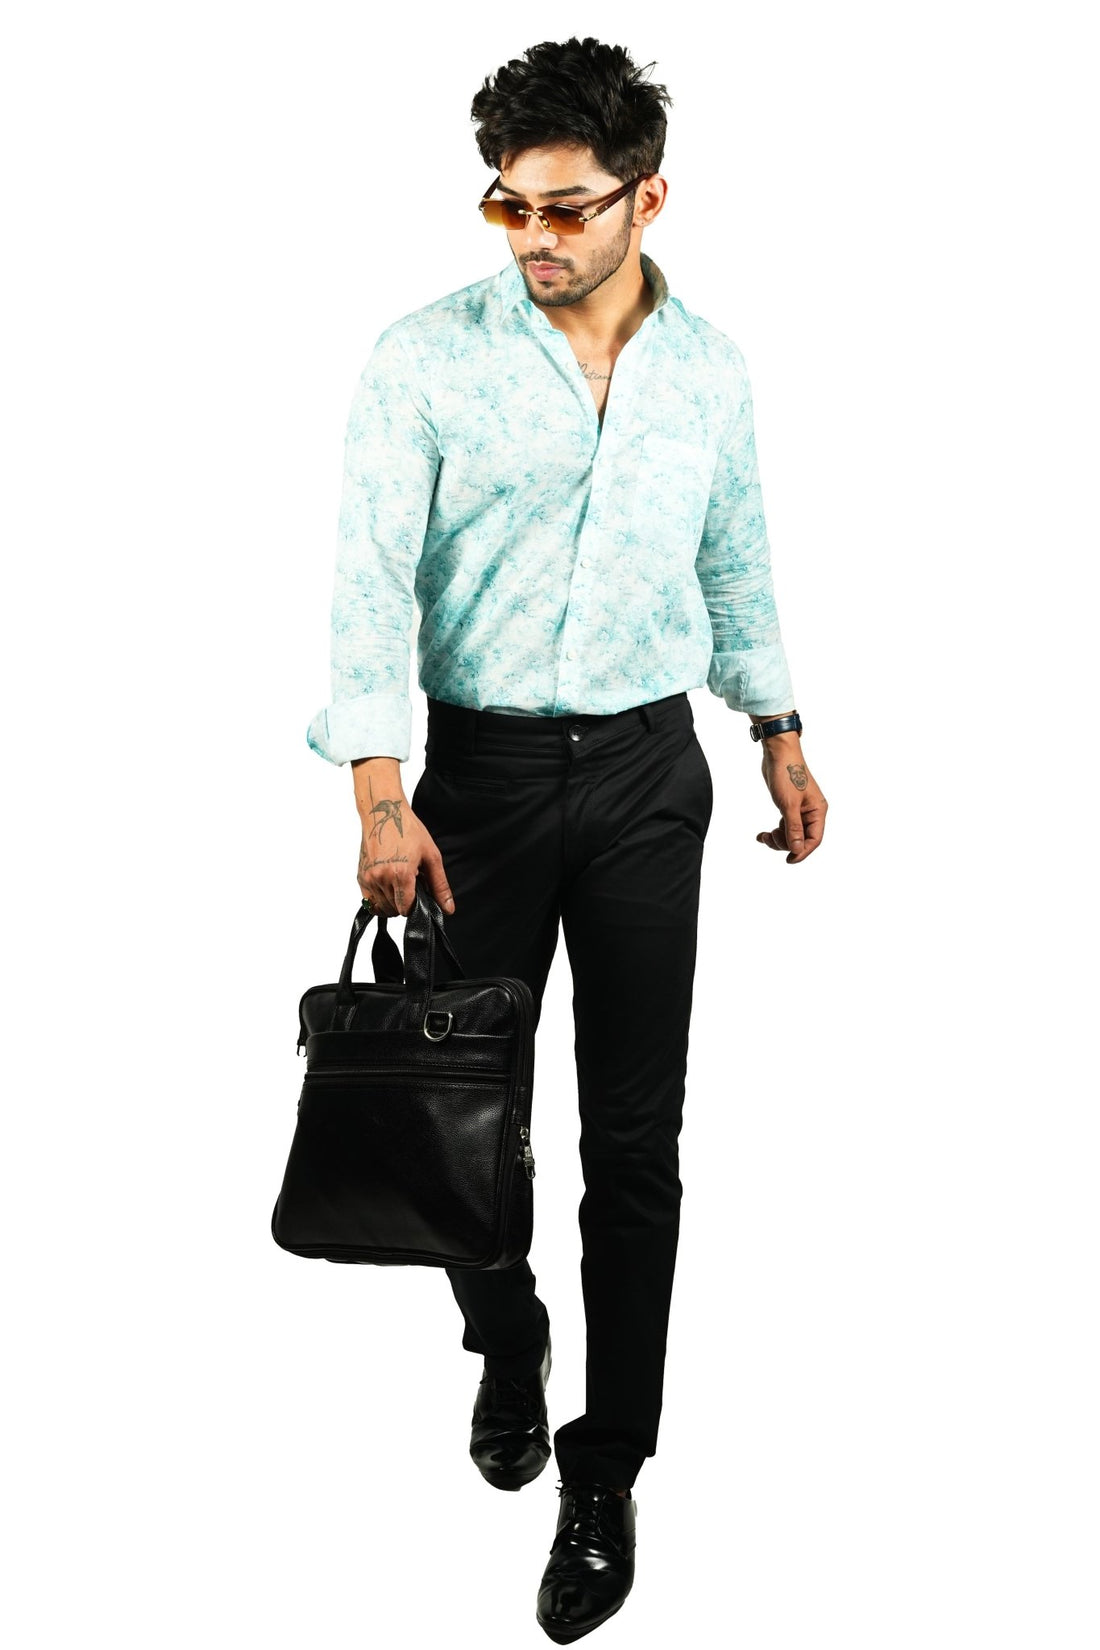 Black Color Cotton Trouser Pants for Men - Punekar Cotton